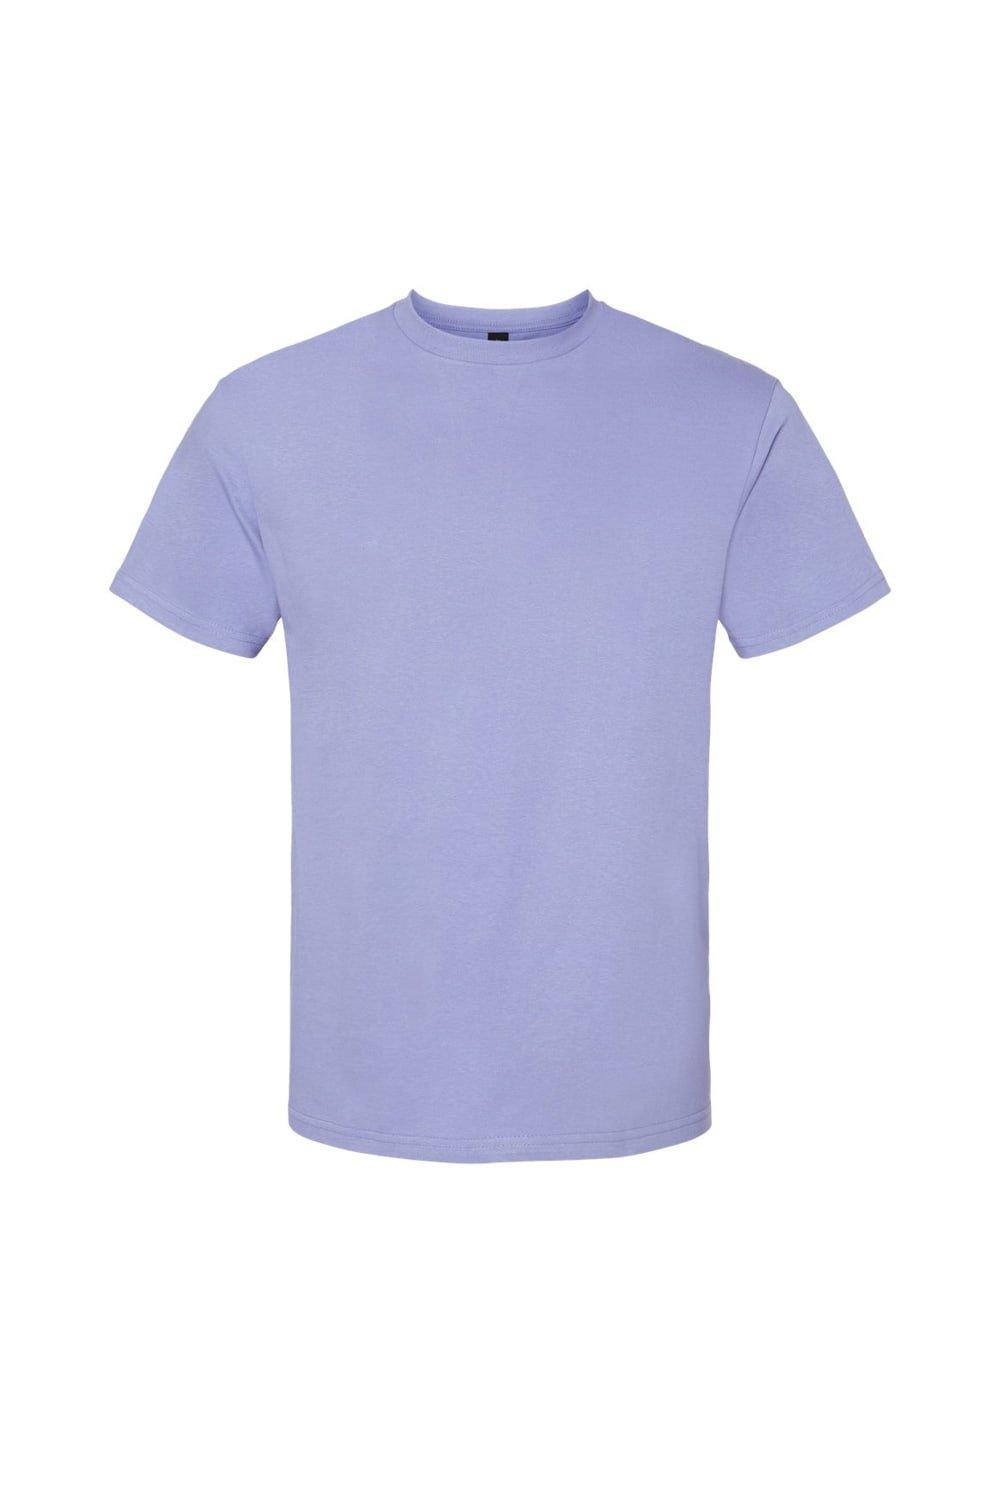 Футболка Softstyle средней плотности Gildan, фиолетовый футболка softstyle средней плотности gildan фиолетовый